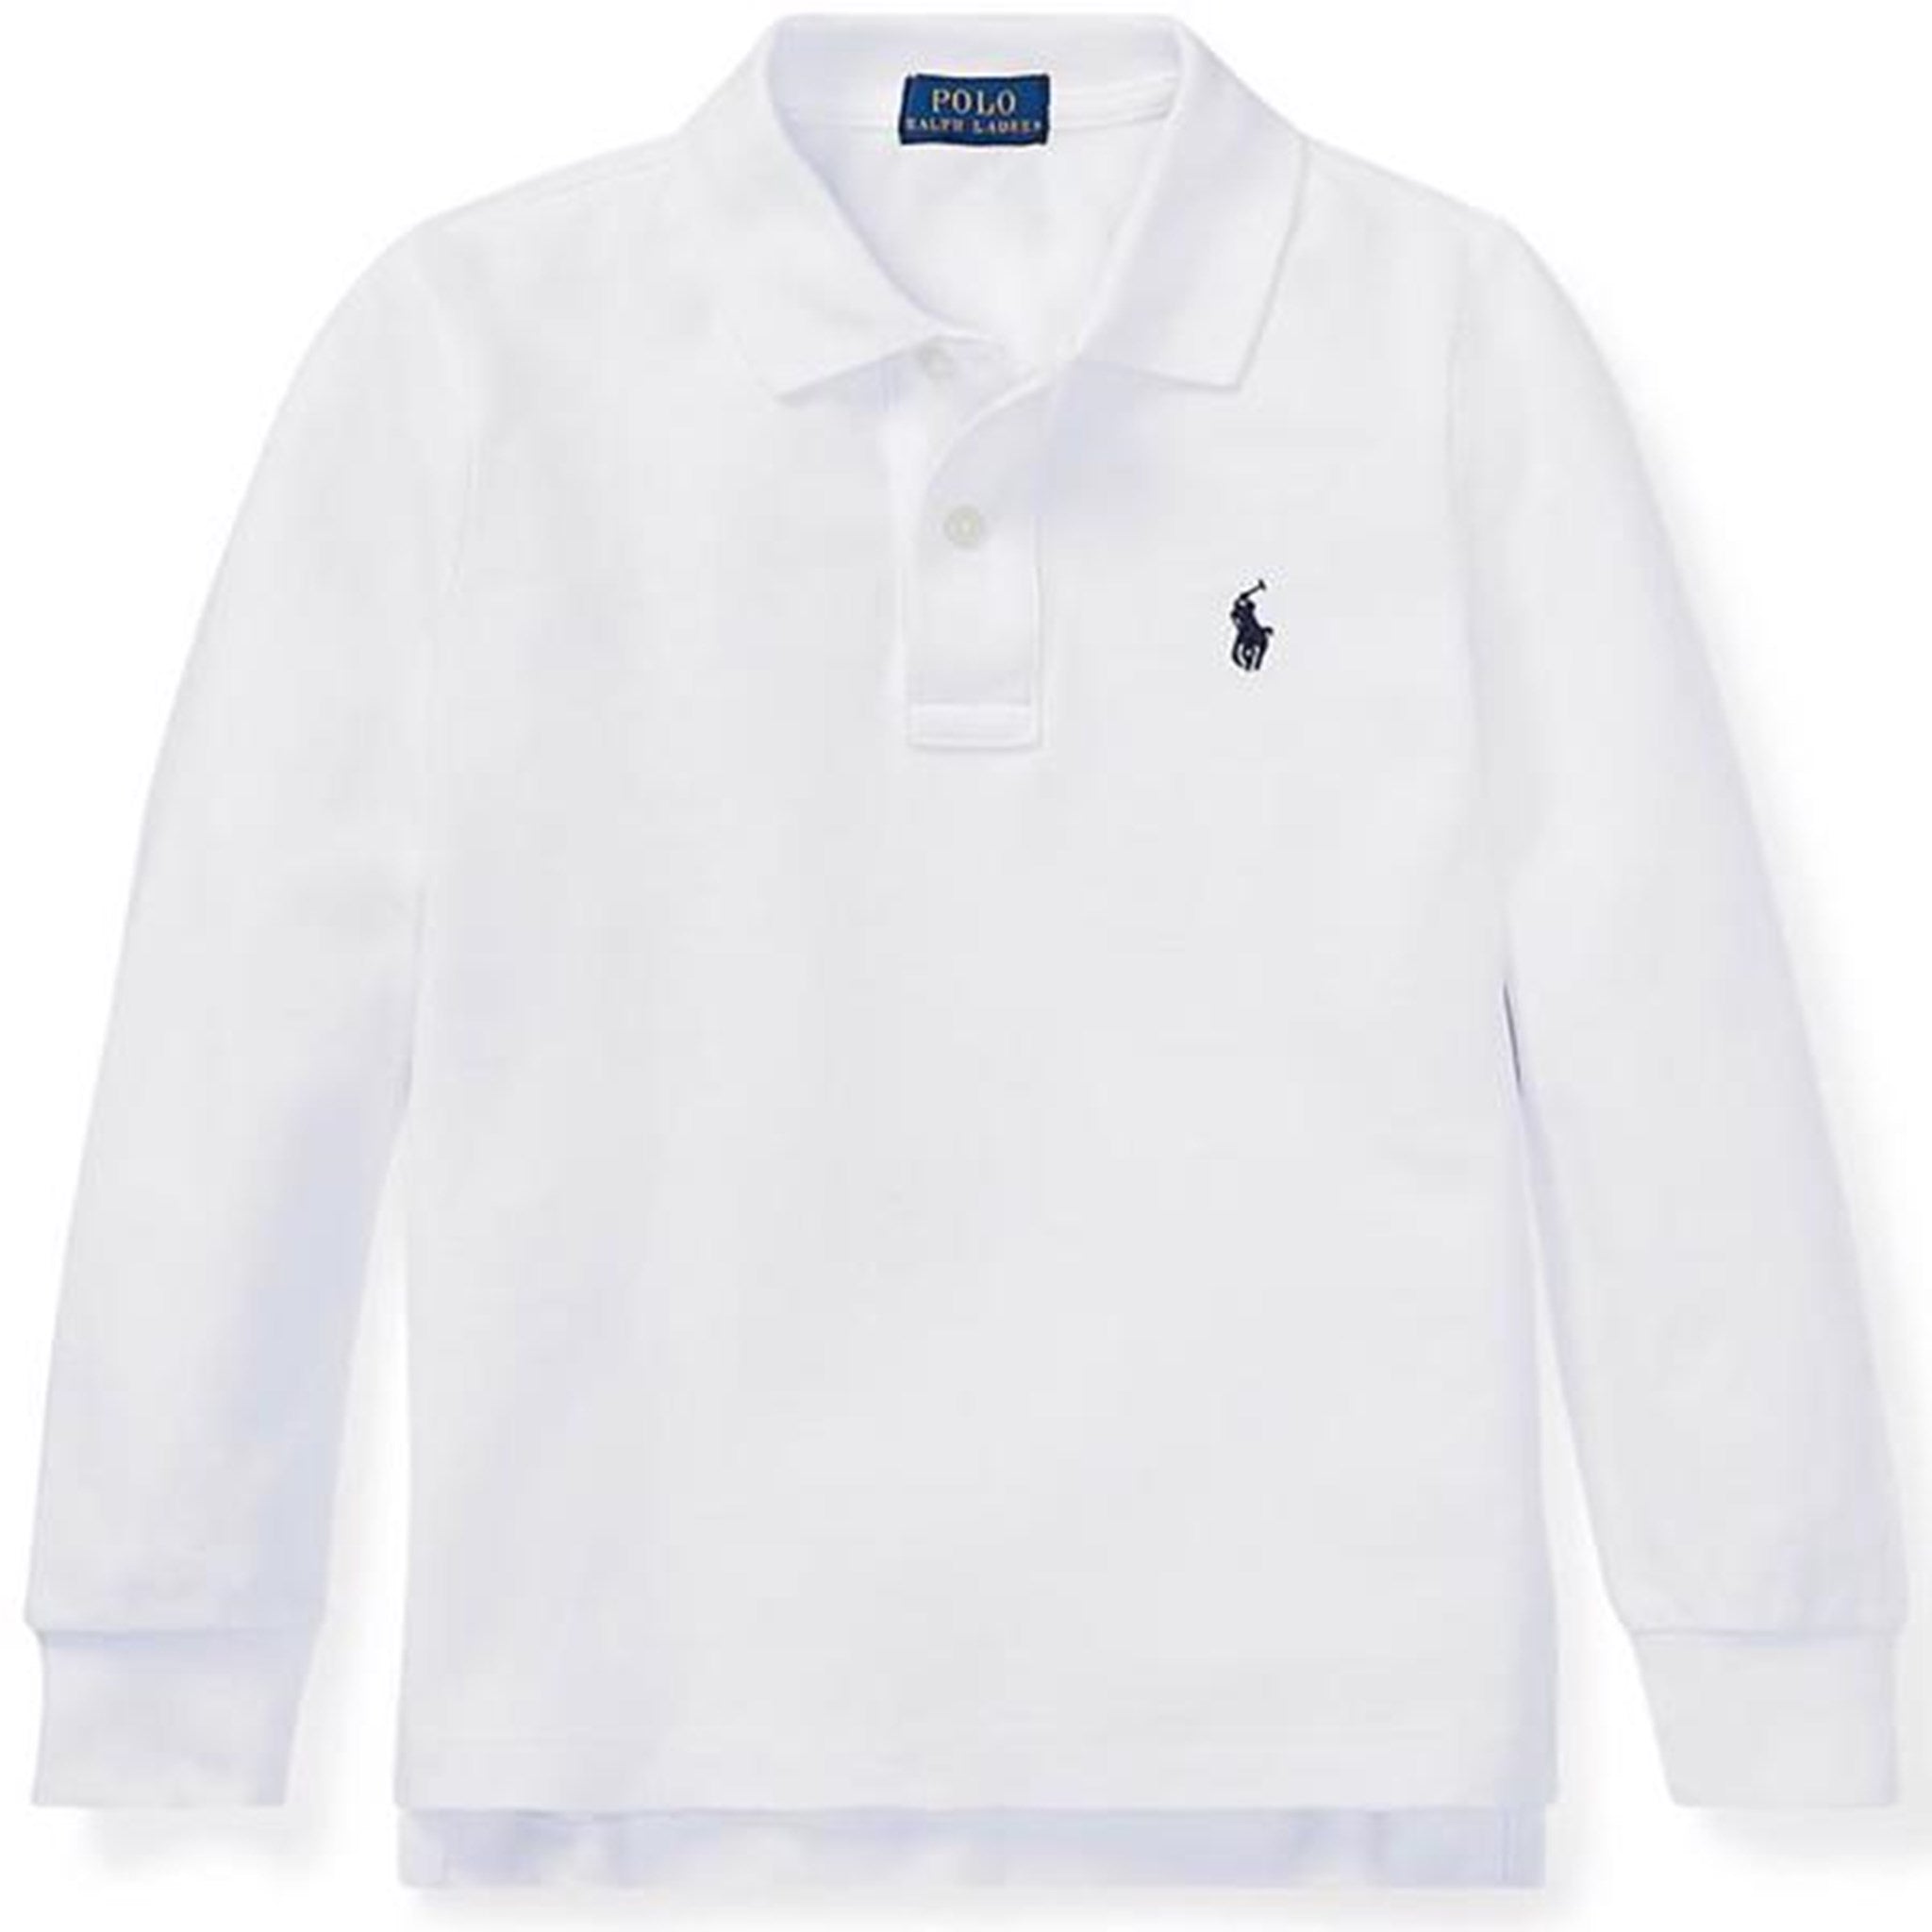 Polo Ralph Lauren Boy Long Sleeve Polo White